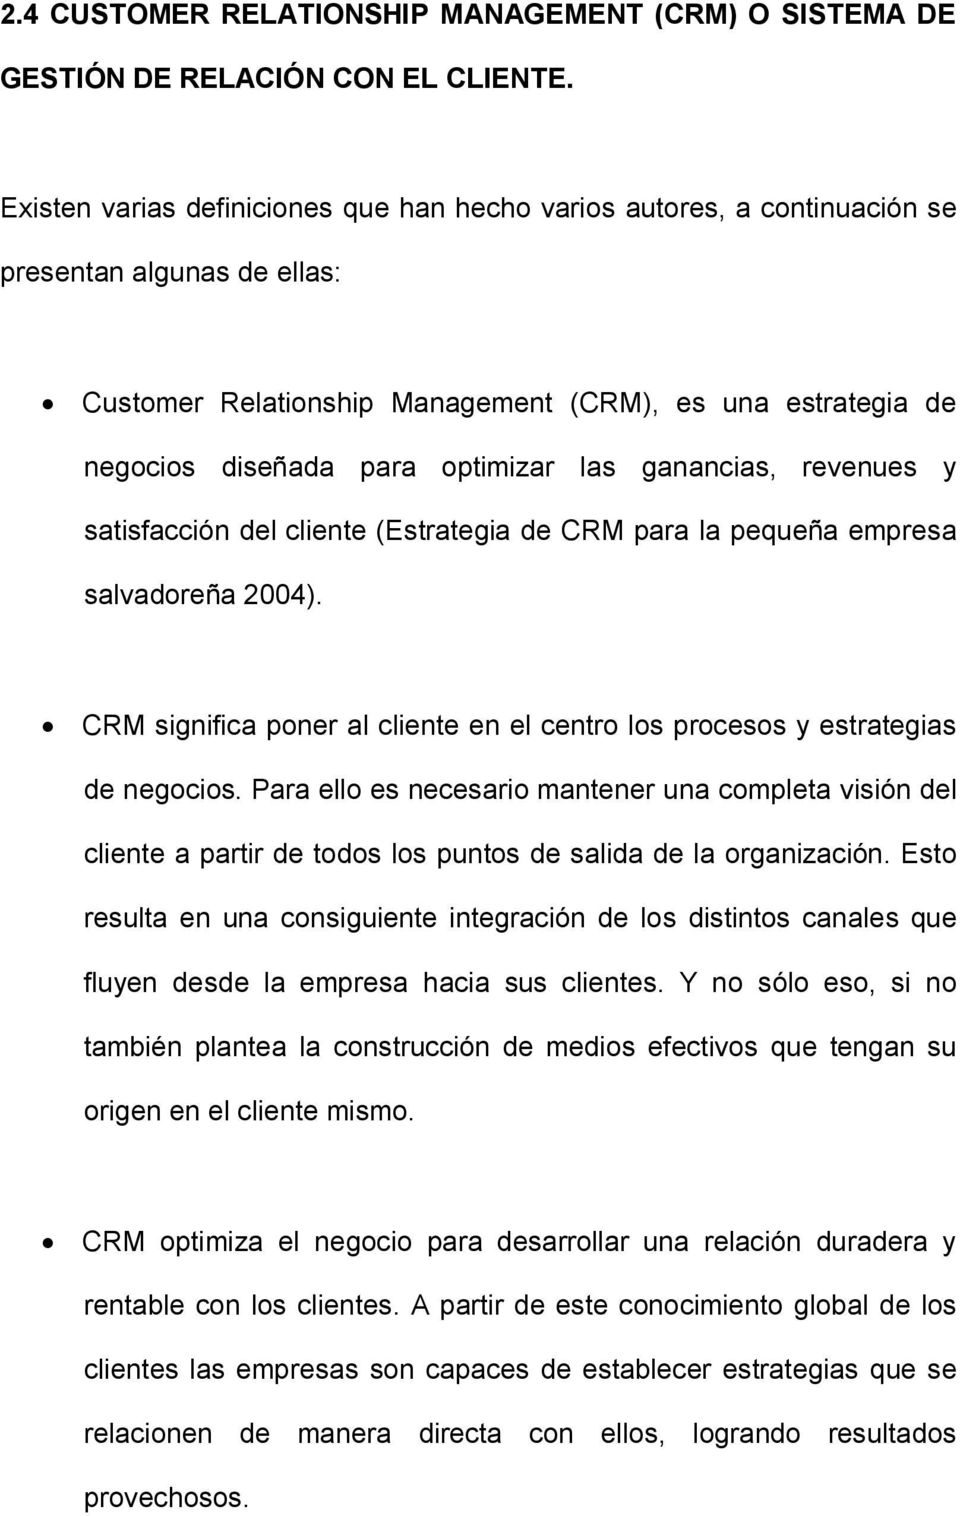 las ganancias, revenues y satisfacción del cliente (Estrategia de CRM para la pequeña empresa salvadoreña 2004). CRM significa poner al cliente en el centro los procesos y estrategias de negocios.